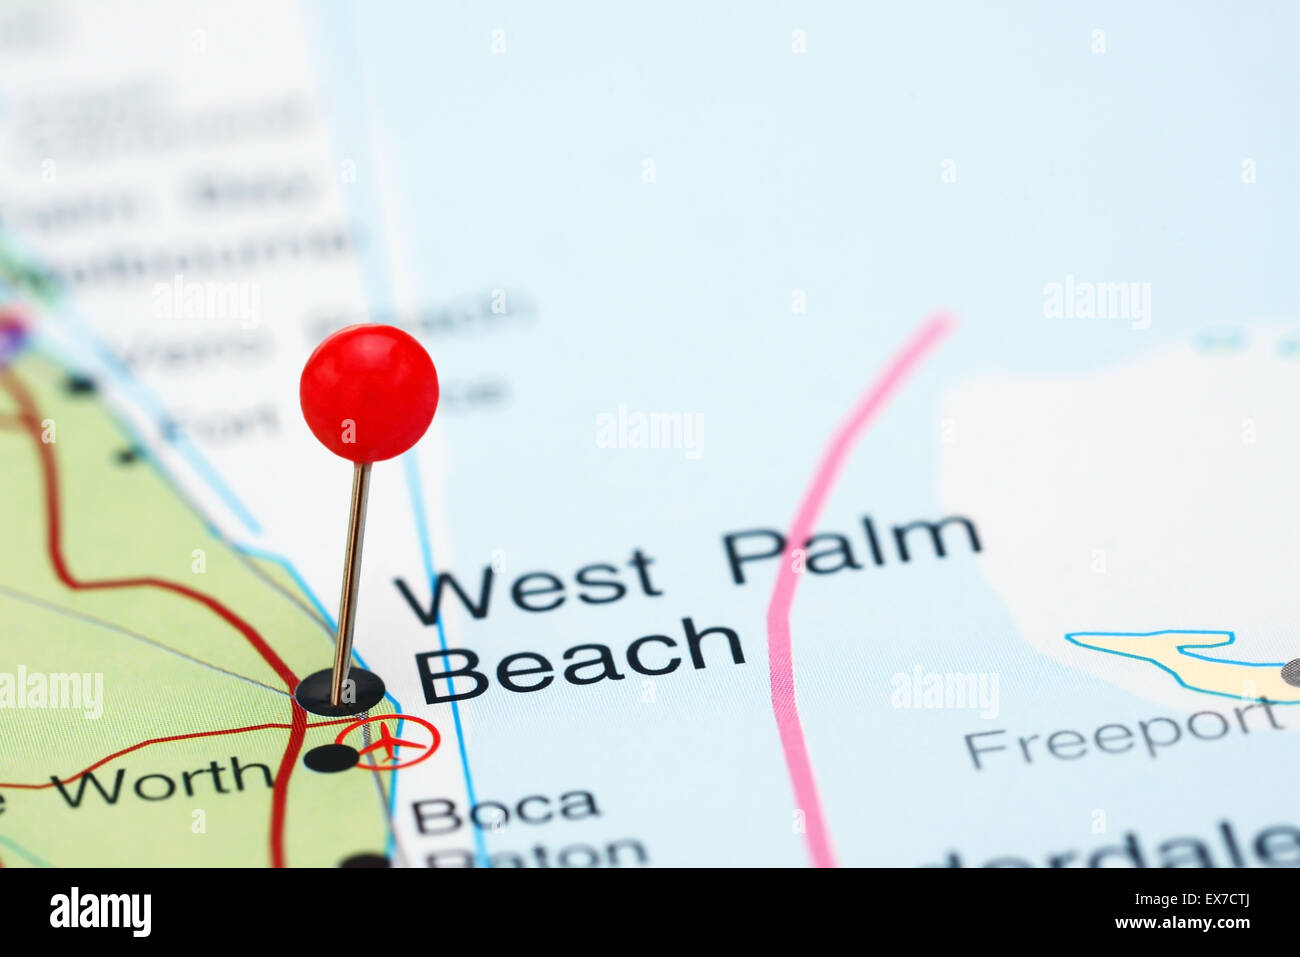 West Palm Beach anclado en un mapa de EE.UU. Foto de stock